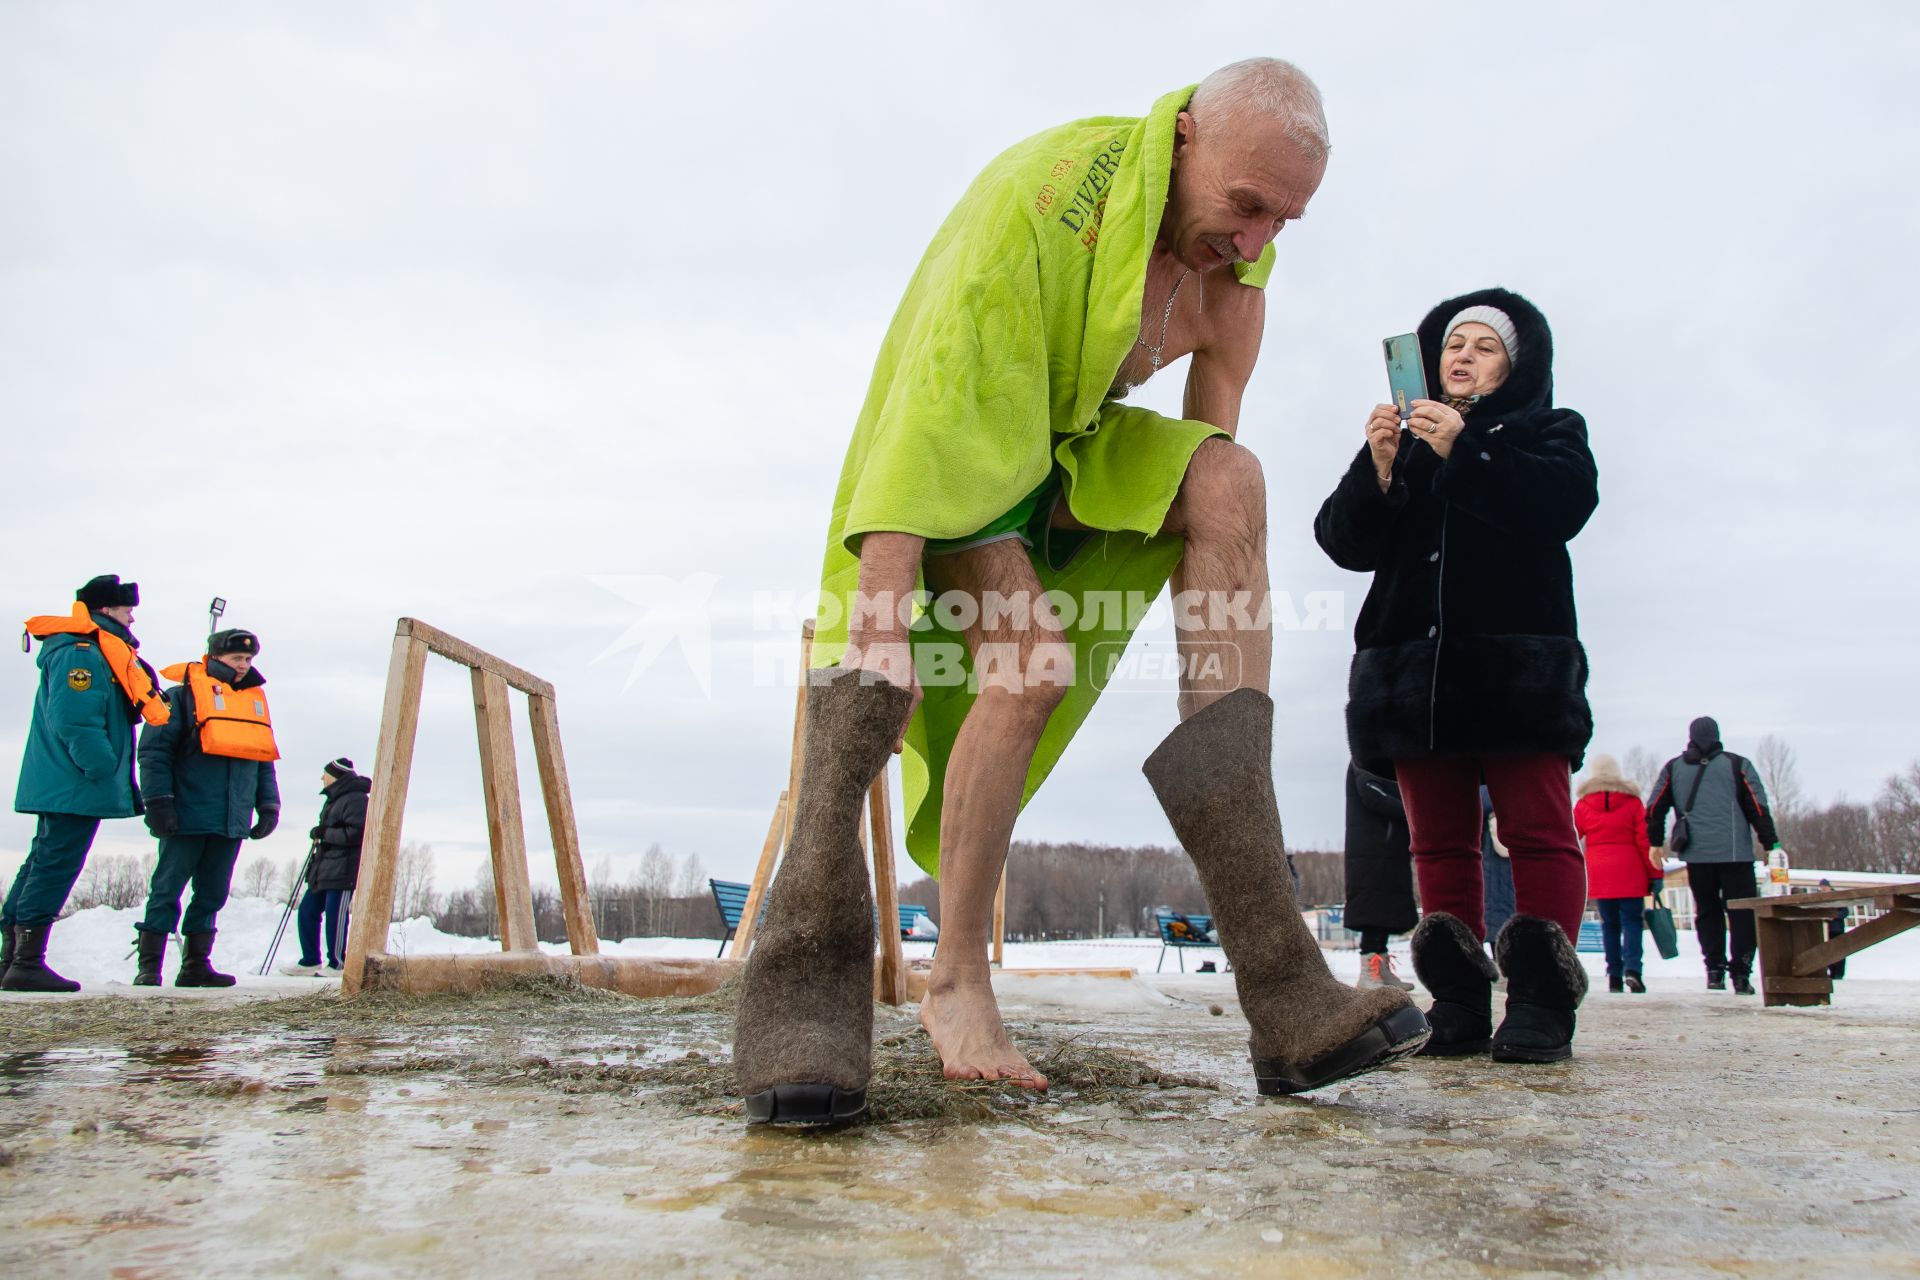 Челябинск. Мужчина во время крещенских купаний.